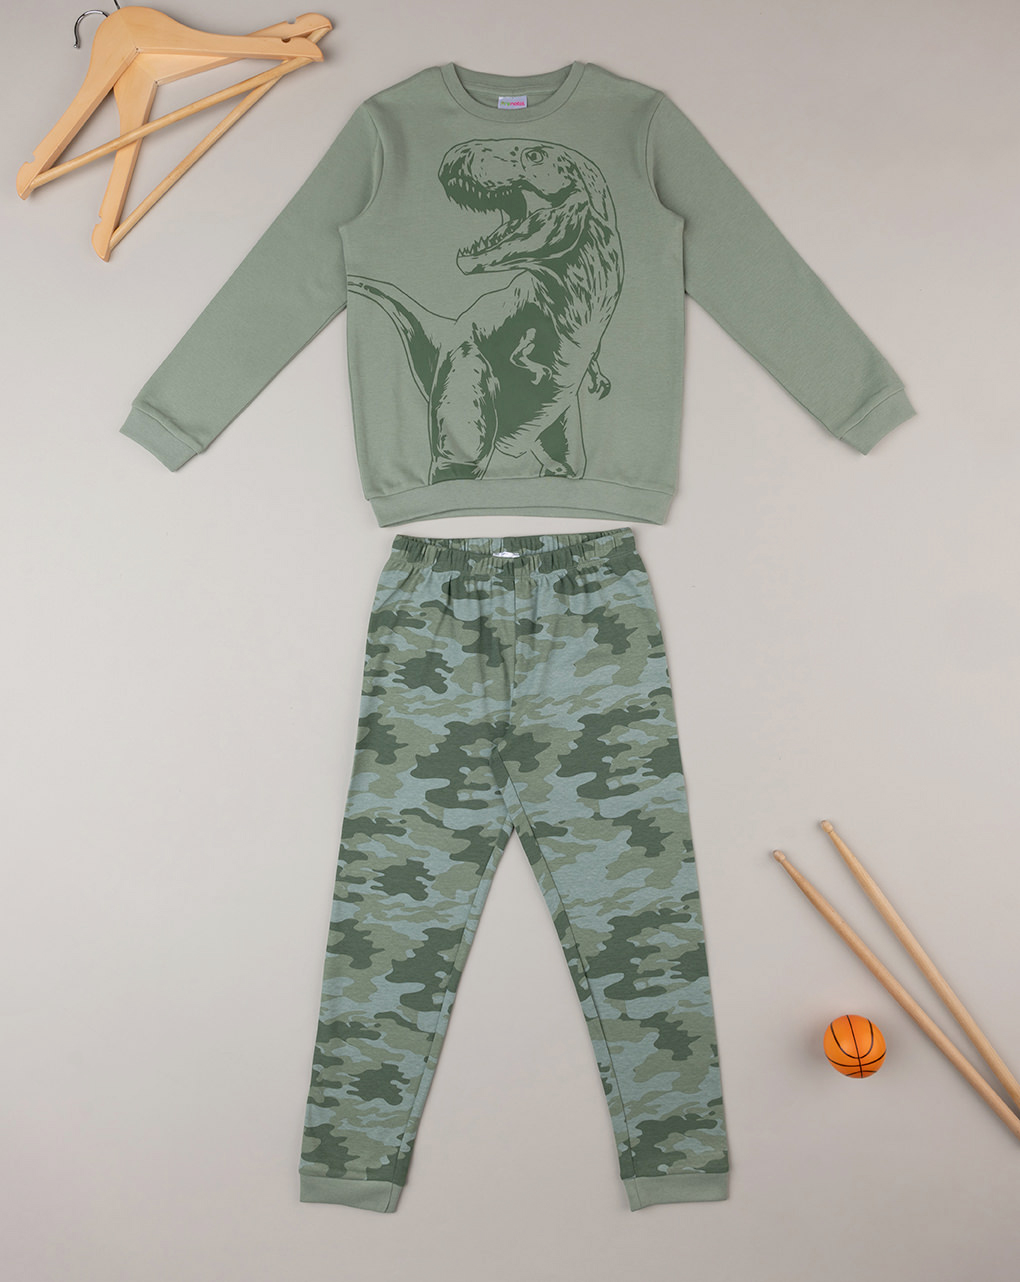 παιδική πιτζάμα χακί με δεινόσαυρο για αγόρι